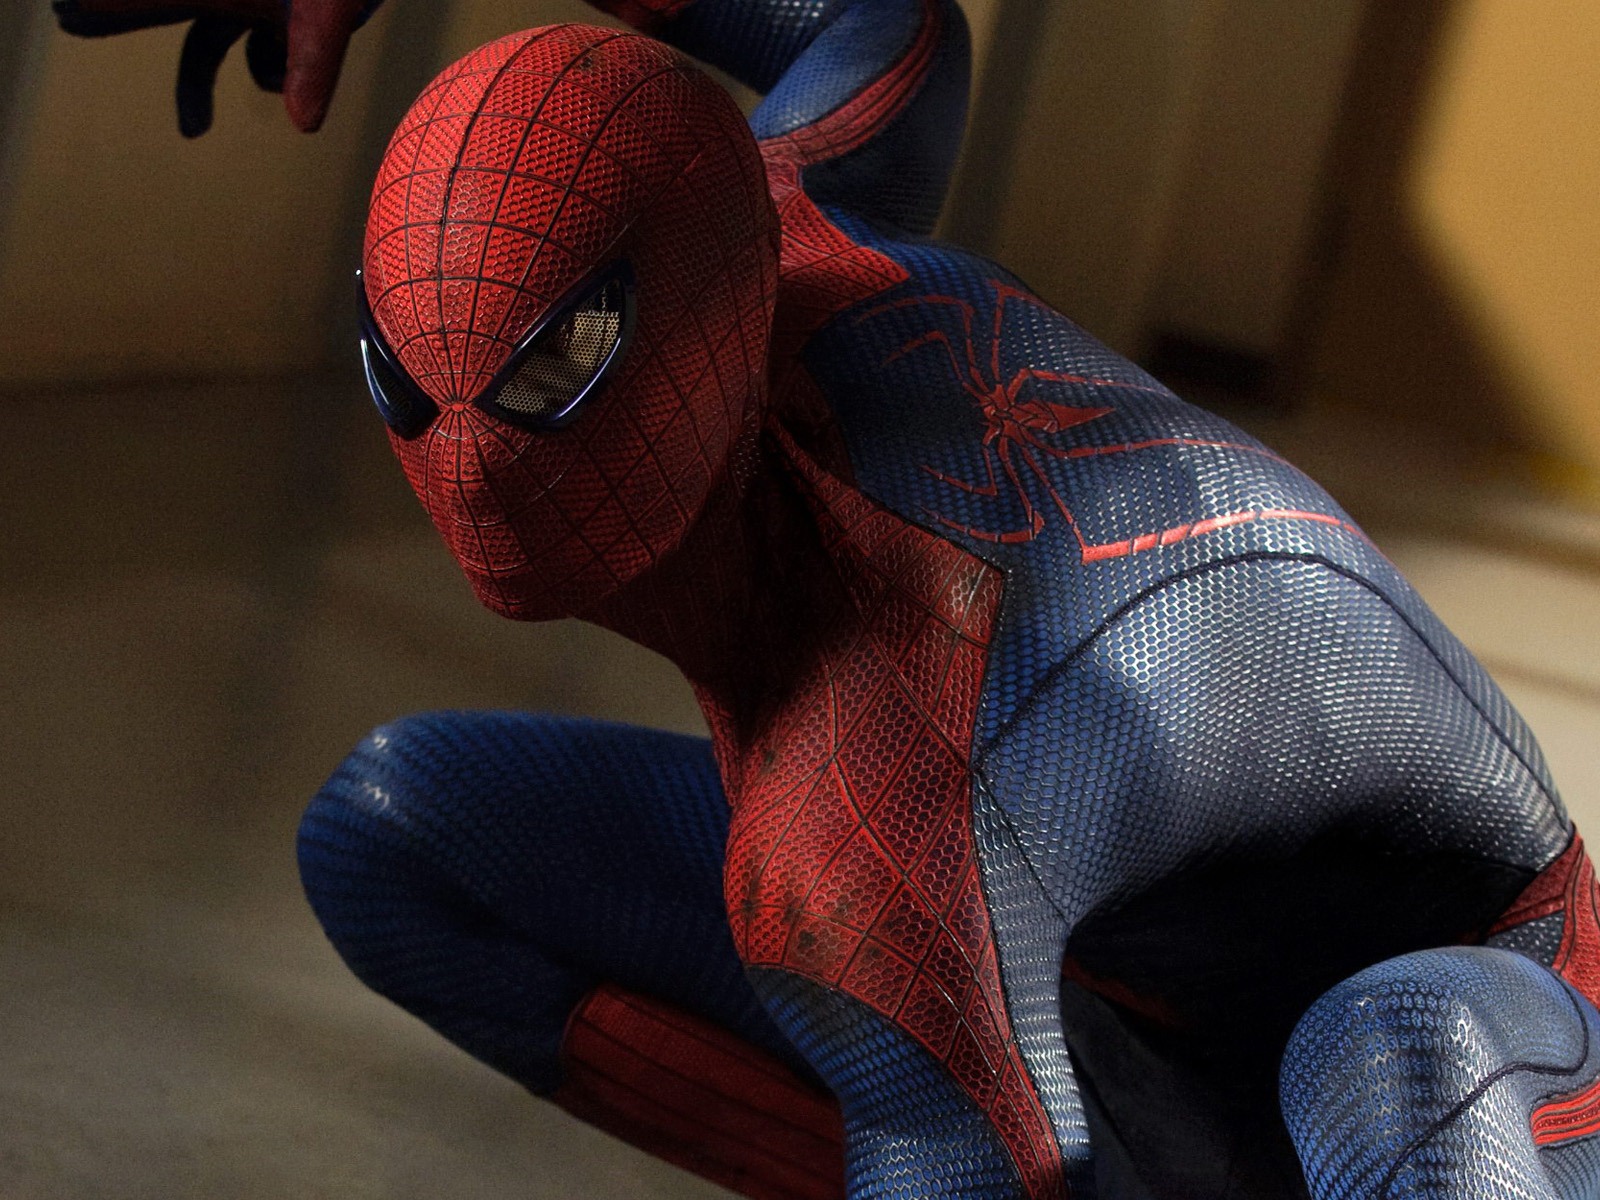 The Amazing Spider-Man 2012 惊奇蜘蛛侠2012 壁纸专辑3 - 1600x1200